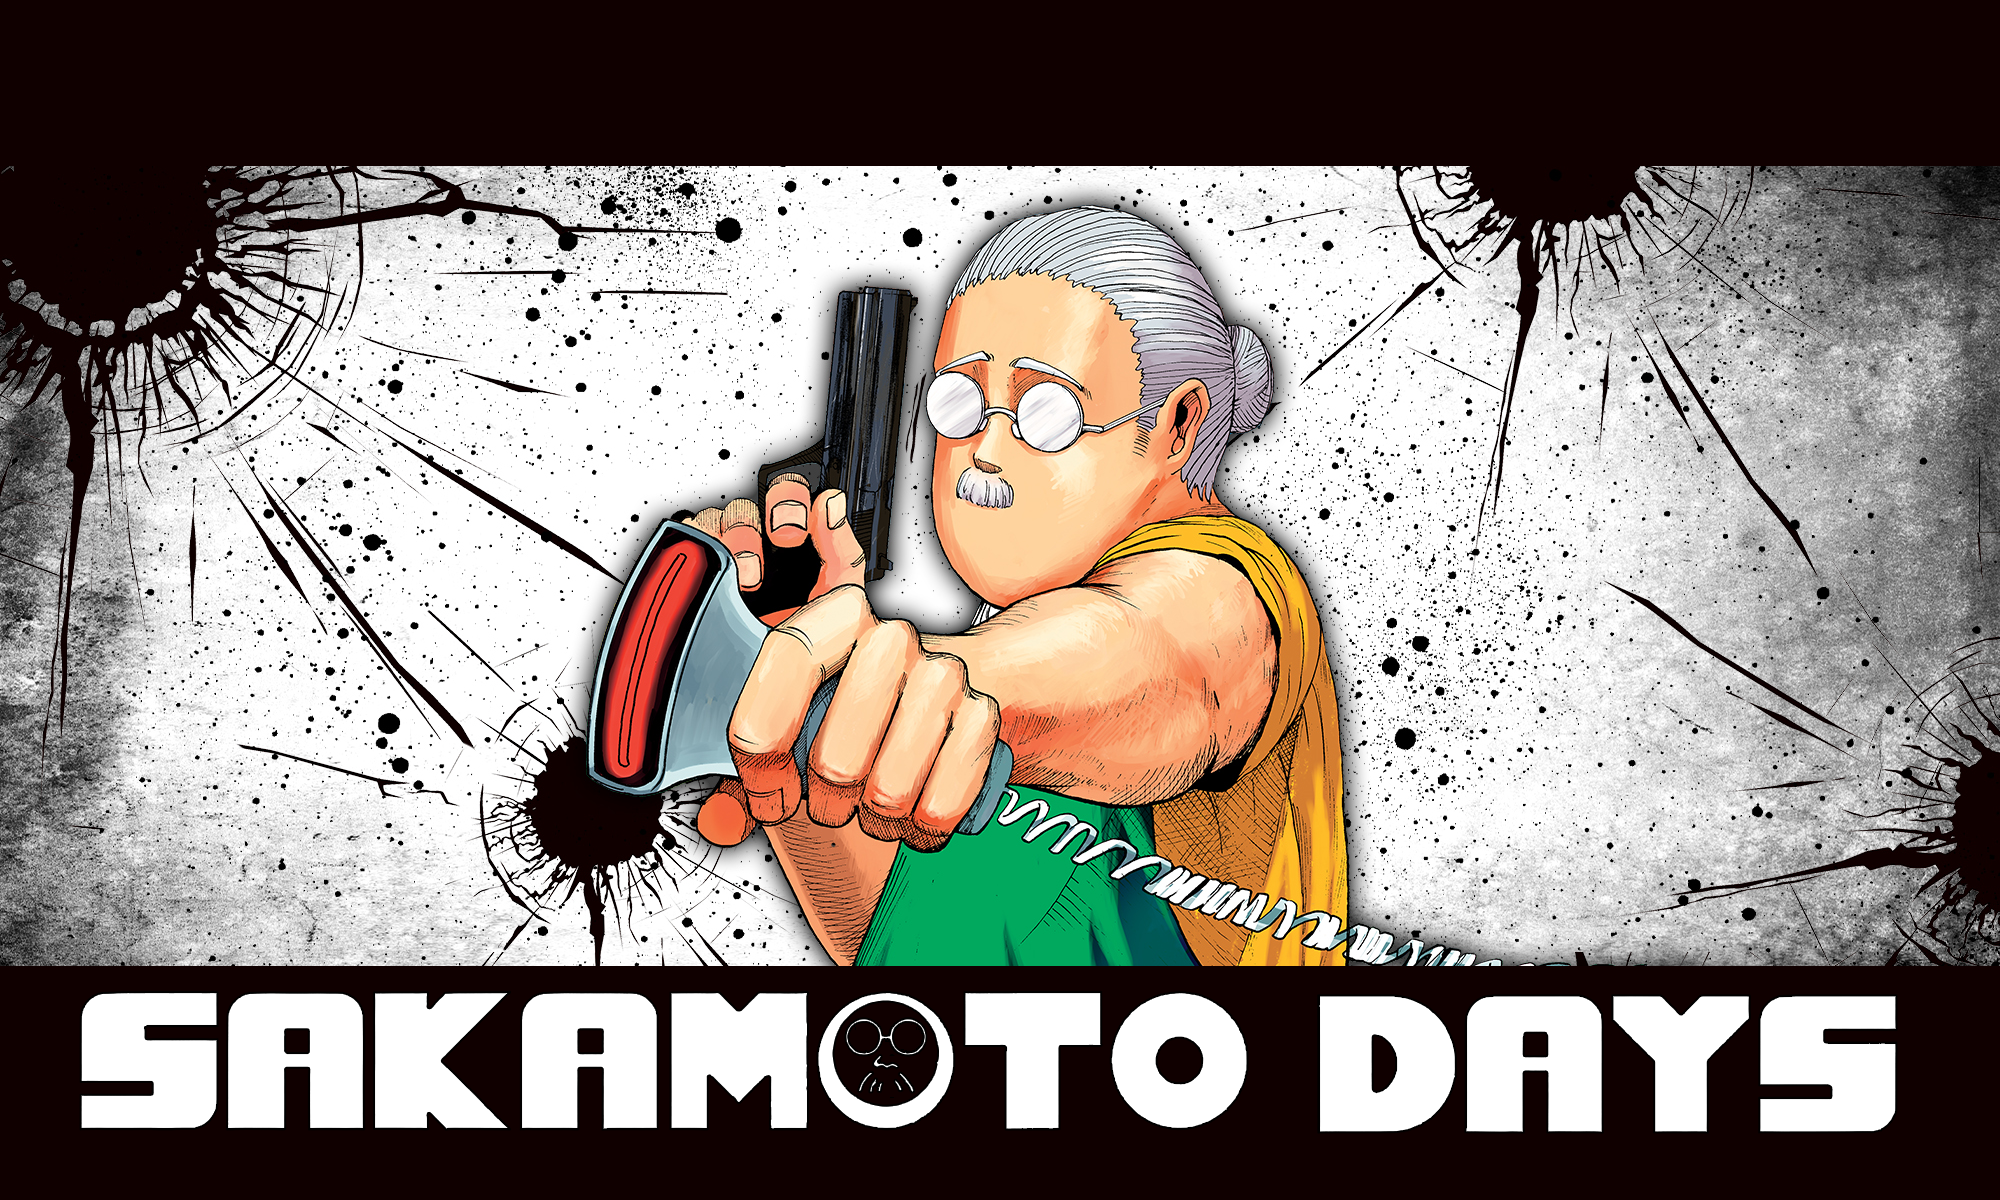 Manga Sakamoto Days Shonen Jump Anime Men Anime Gray Hair Glasses Gun 2000x1200